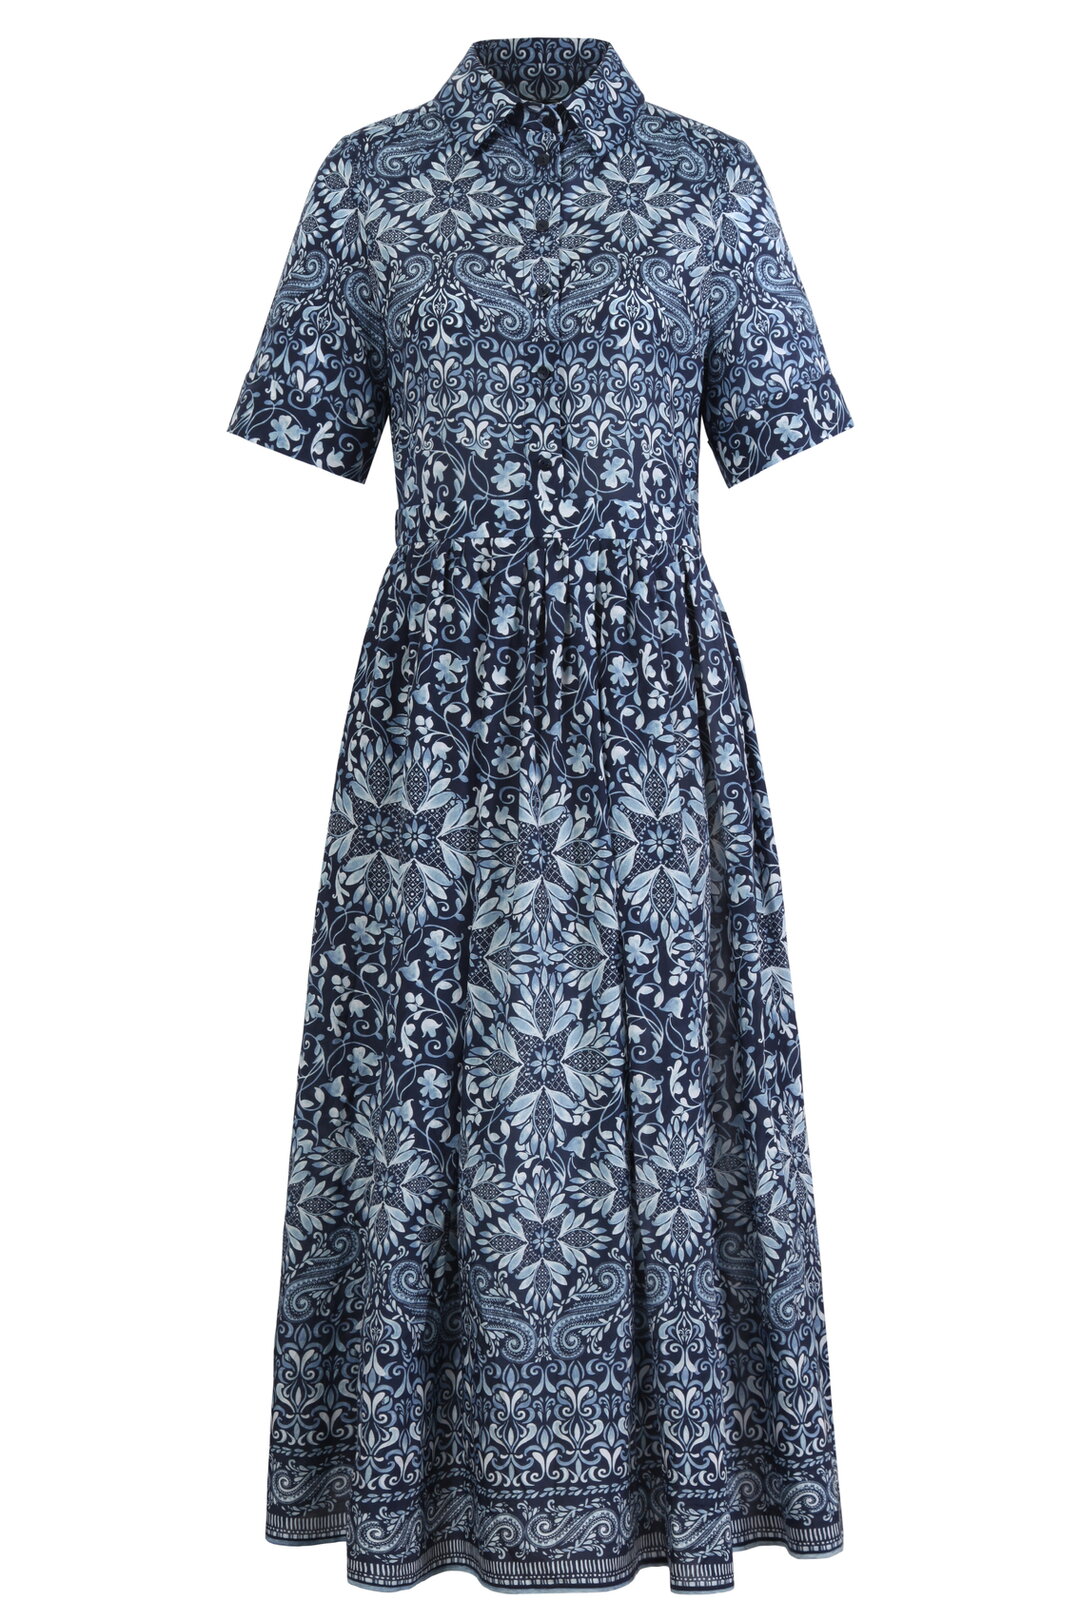 Shirt Dress, Alhambra Pattern